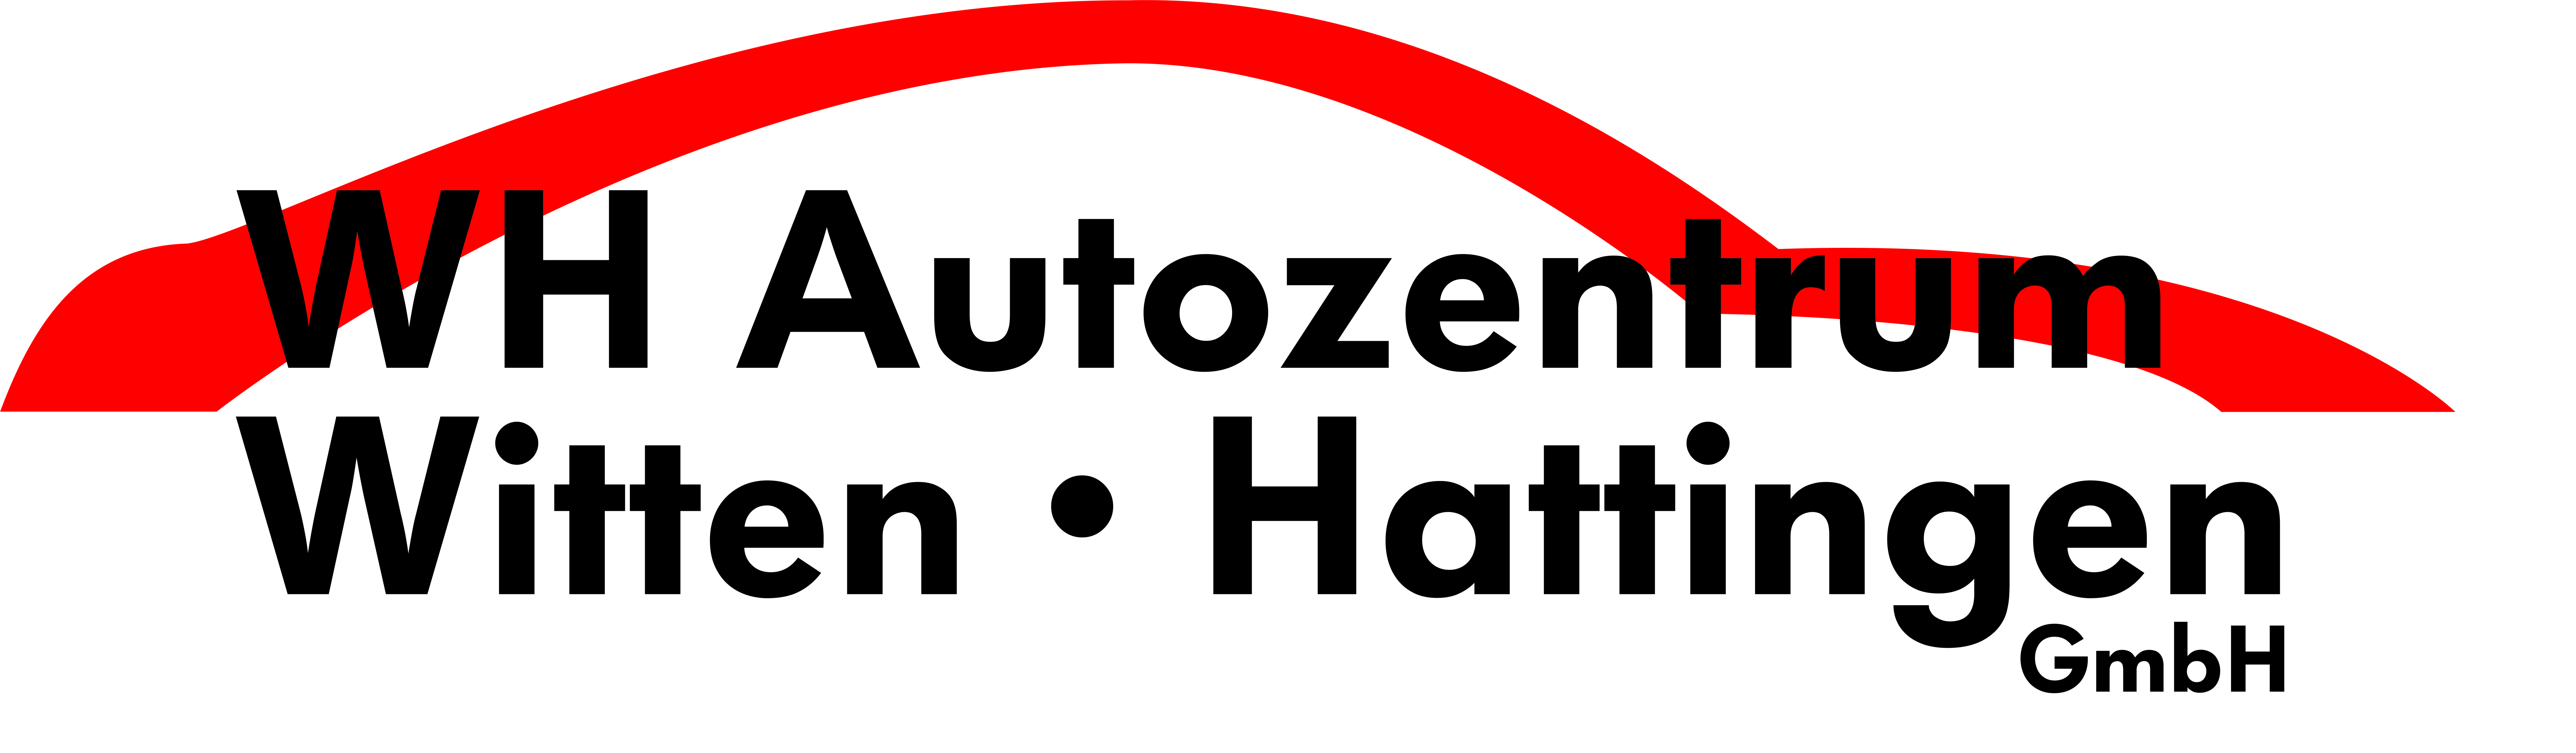 Foto - WH Autozentrum Witten/Hattingen GmbH